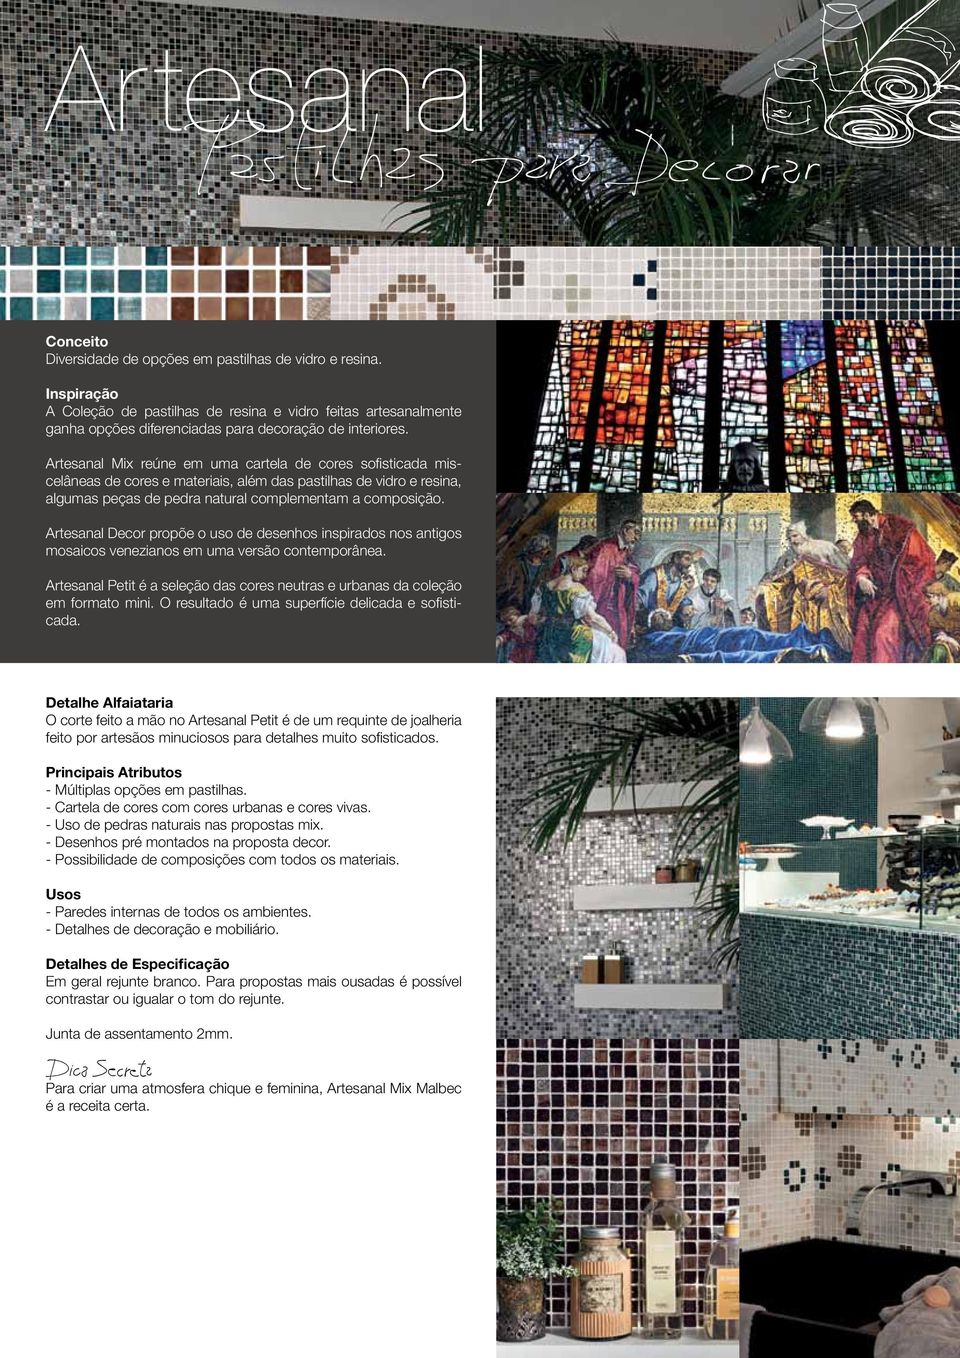 Artesanal Decor propõe o uso de desenhos inspirados nos antigos mosaicos venezianos em uma versão contemporânea. Artesanal Petit é a seleção das cores neutras e urbanas da coleção em formato mini.